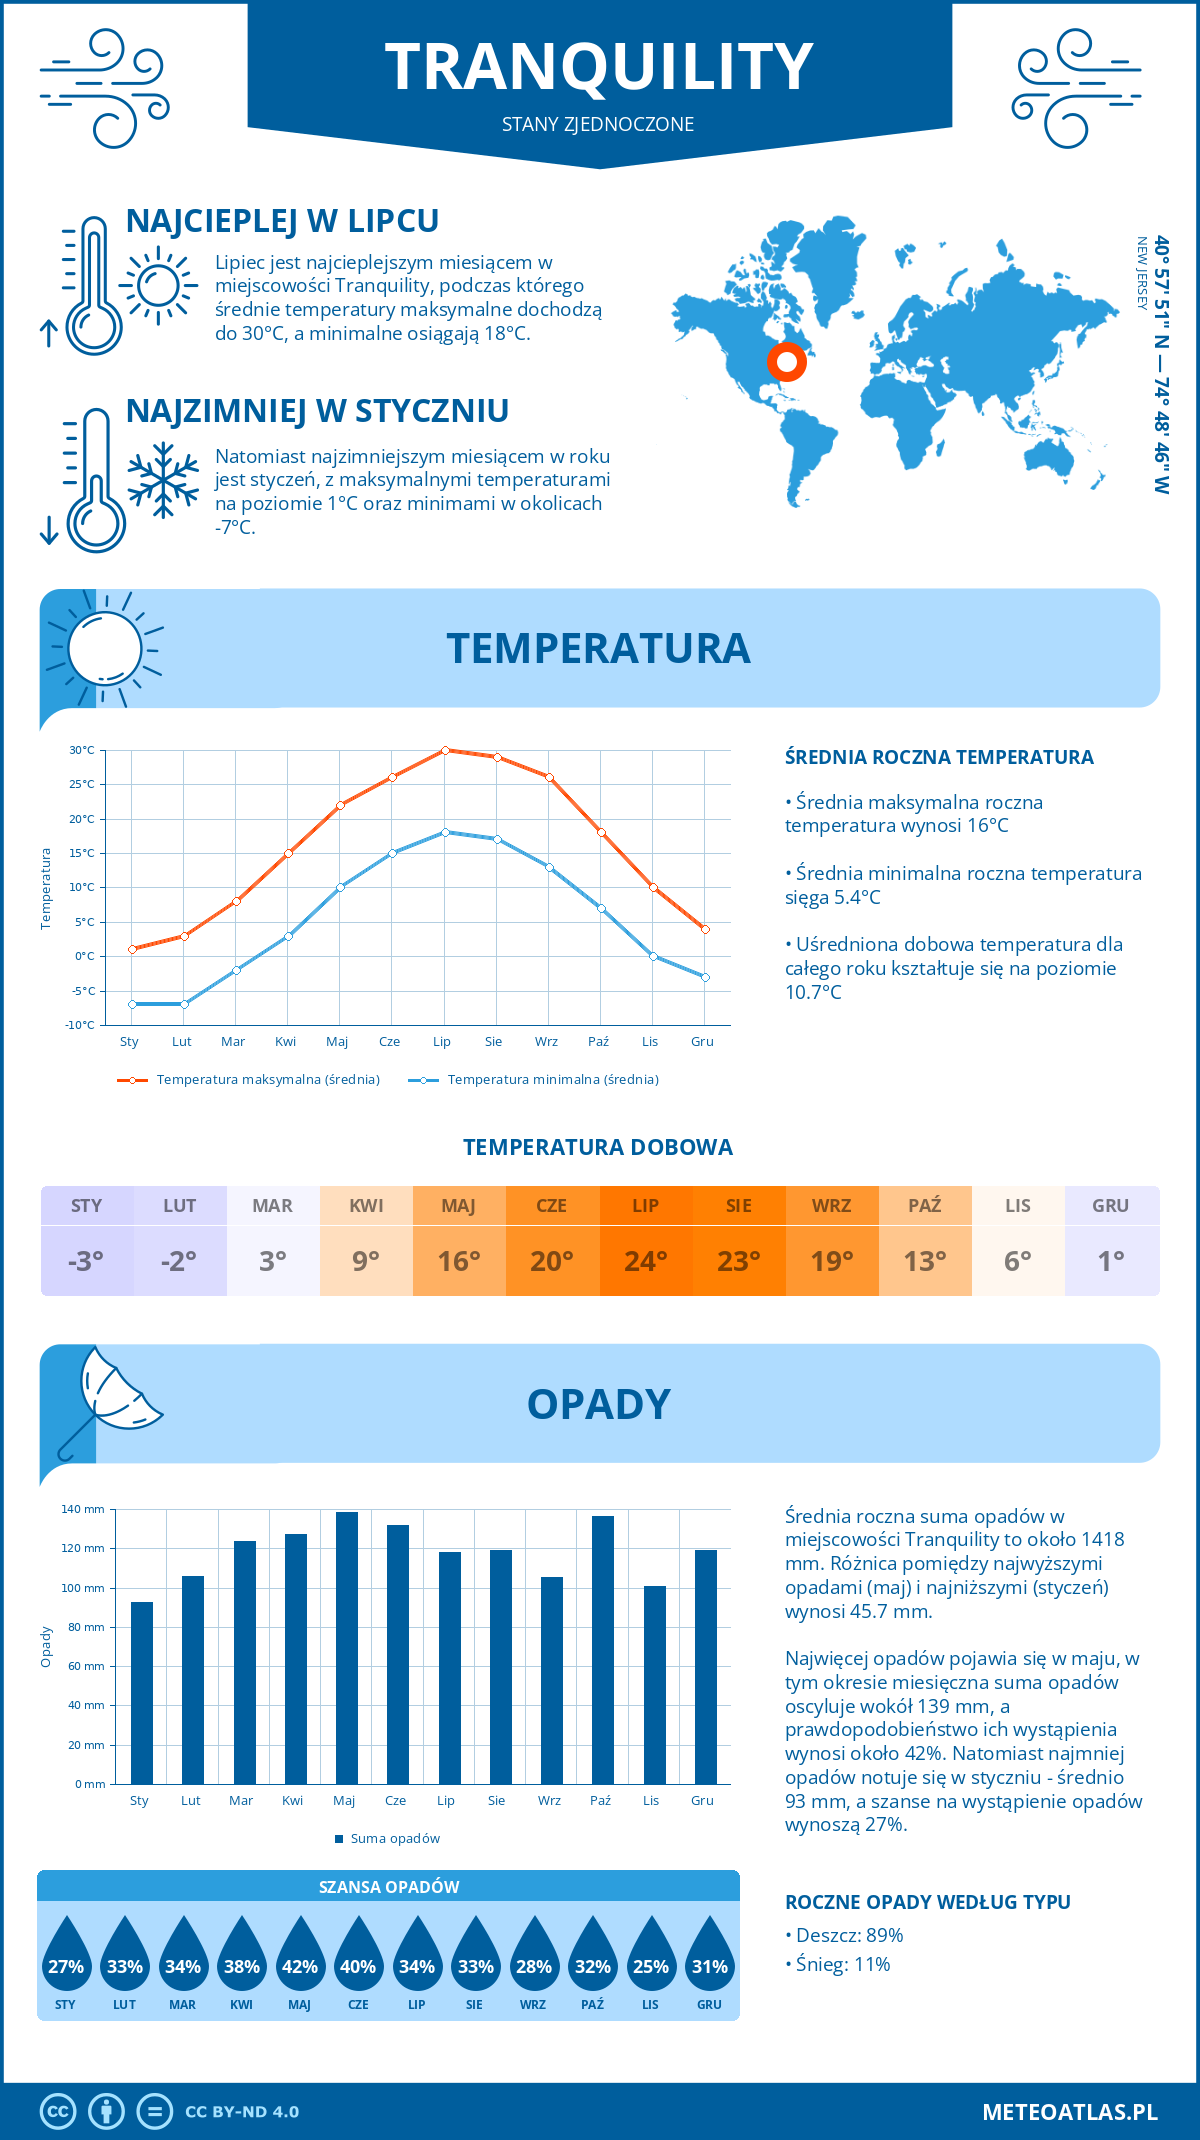 Pogoda Tranquility (Stany Zjednoczone). Temperatura oraz opady.